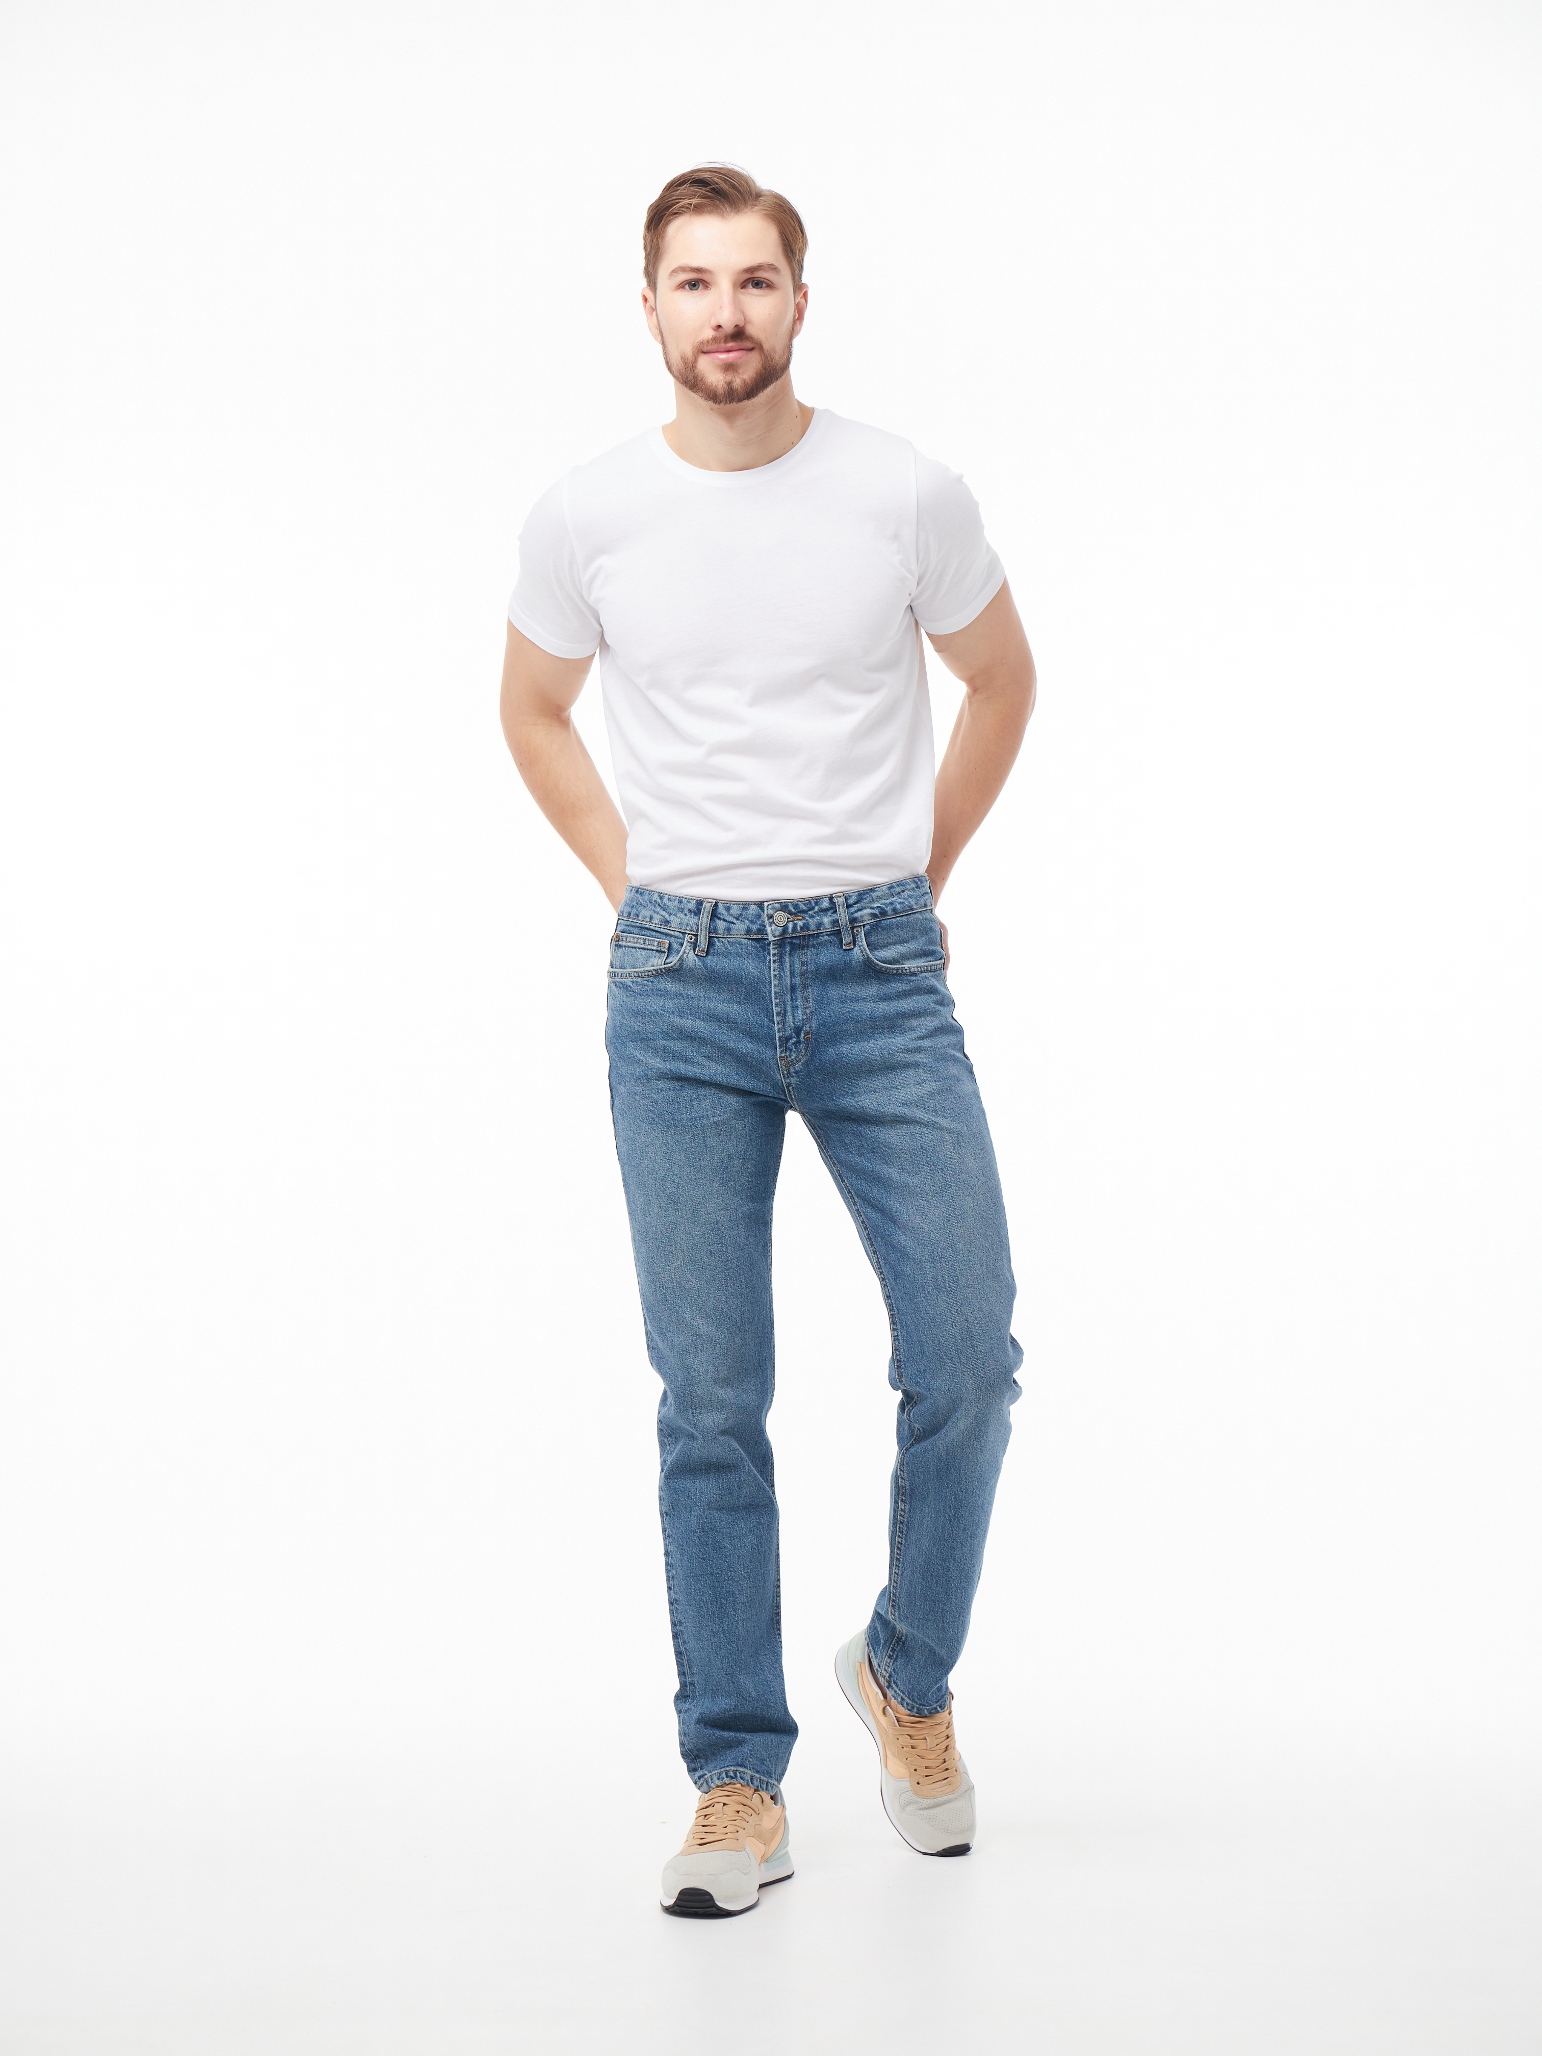 Чоловічі джинси Tapered OSCAR 1087 | Men's jeans Tapered OSCAR 1087